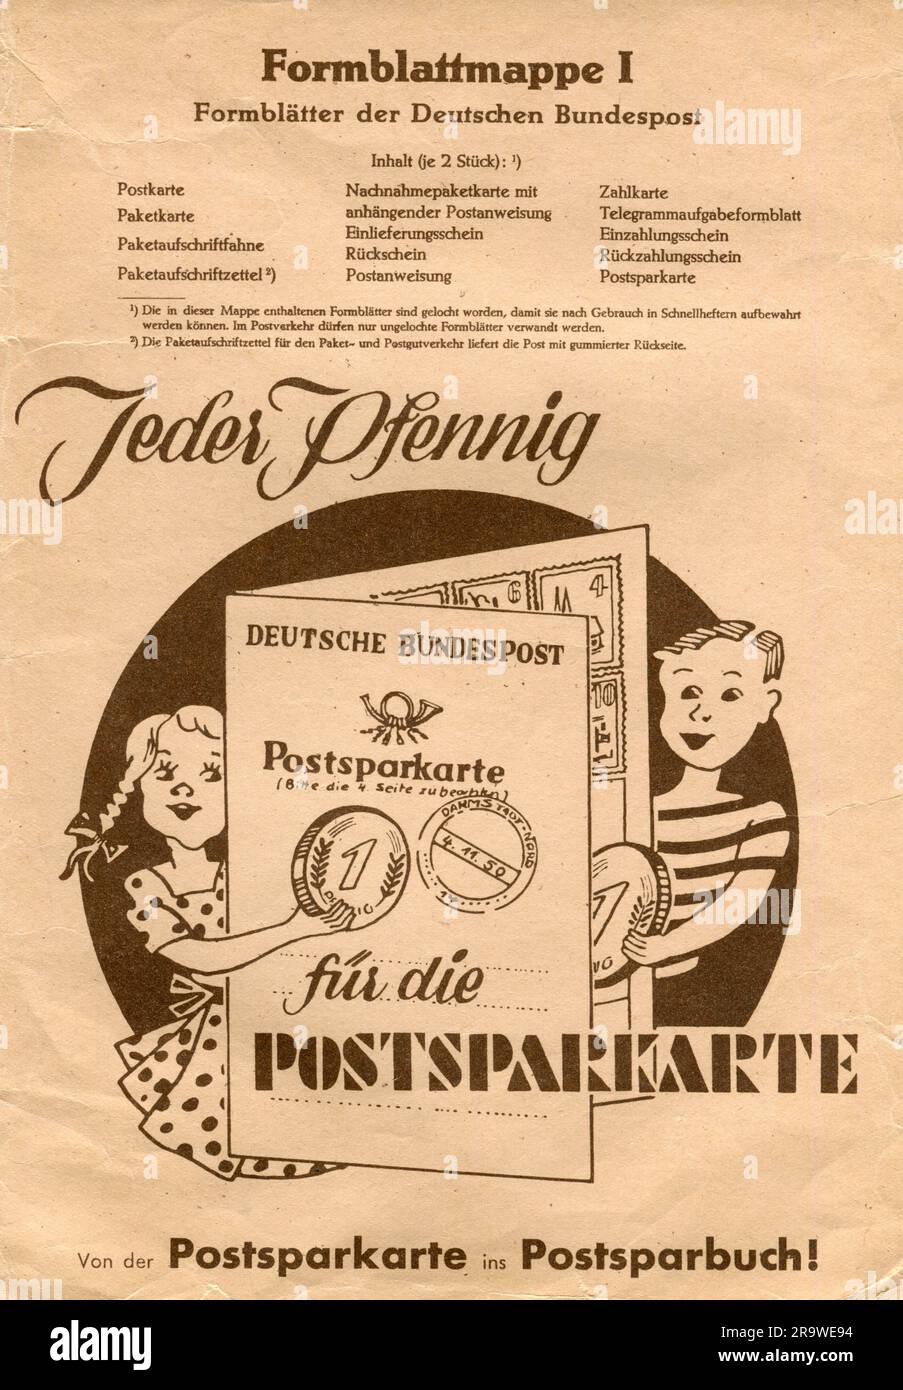 Courrier, formulaire, poste fédérale allemande, formulaire portfolio 1, à des fins de formation, 1953, DROITS-SUPPLÉMENTAIRES-AUTORISATION-INFO-NON-DISPONIBLE Banque D'Images